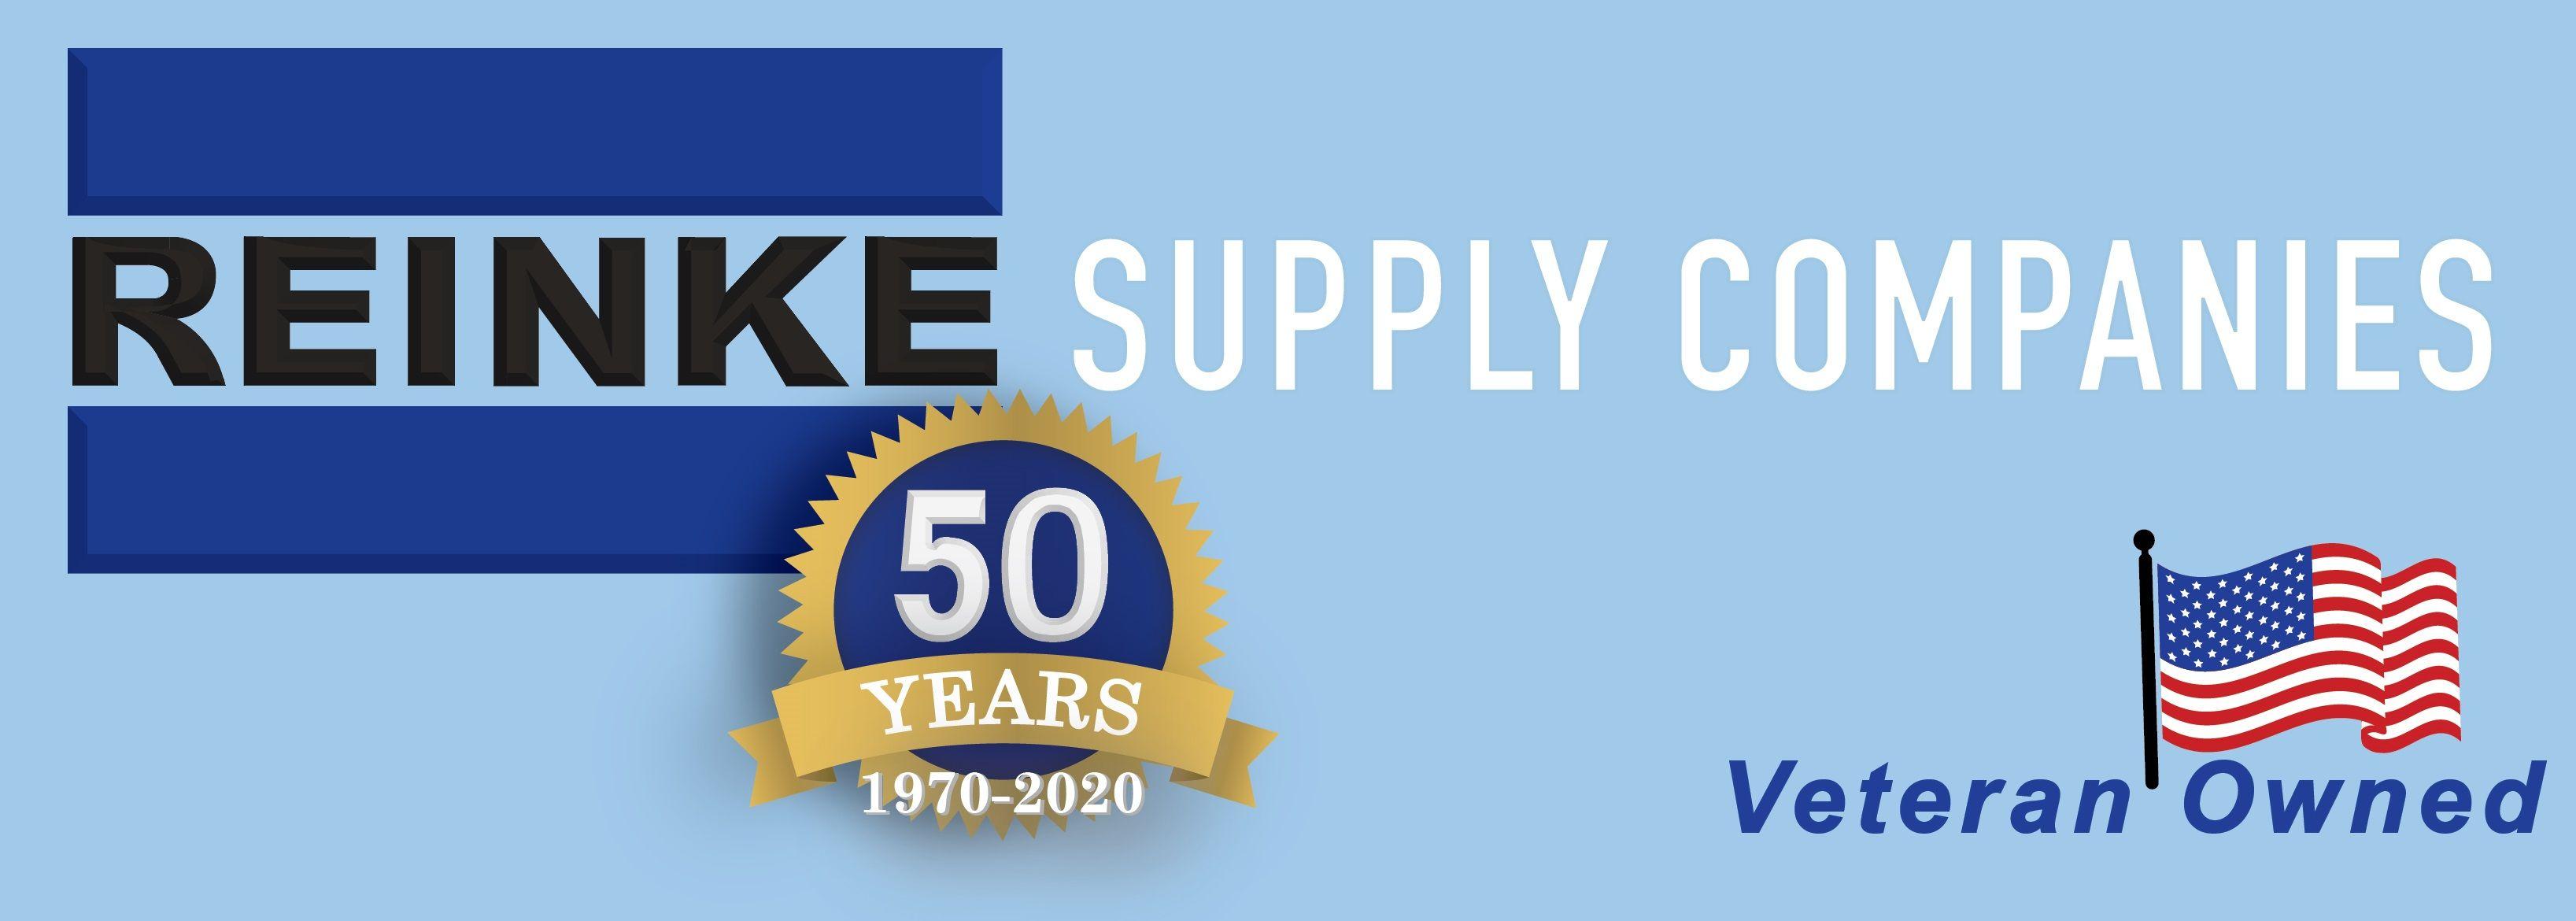 Reinke Logo - REINKE : Supply Companies